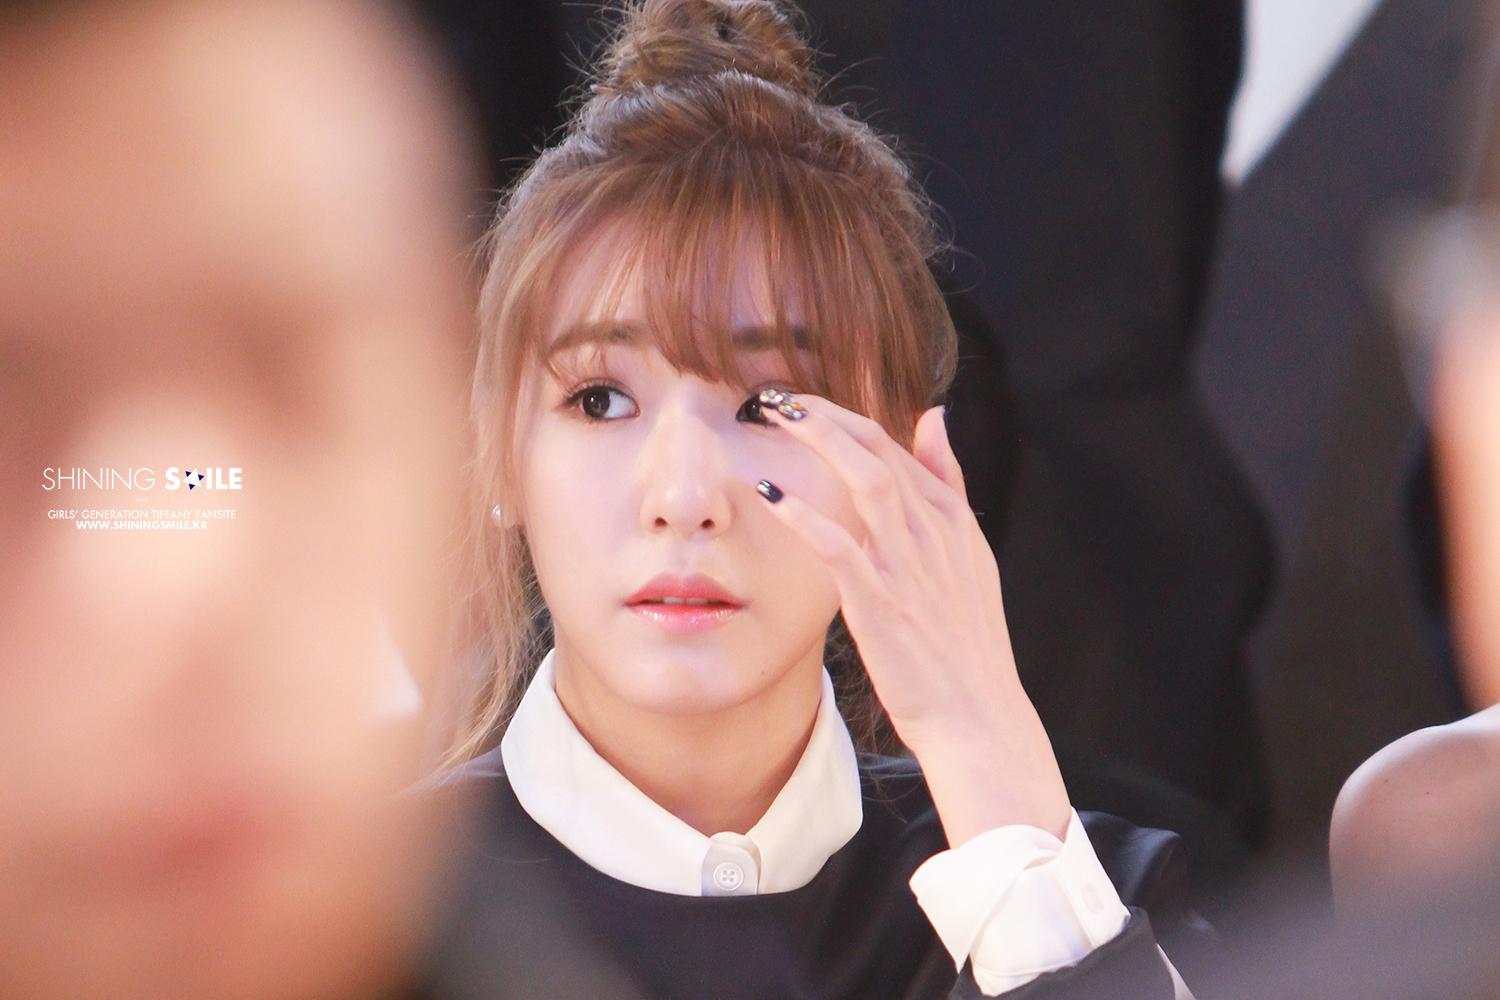 [PIC][20-10-2014]Tiffany xuất hiện tại buổi ra mắt BTS mới của thương hiệu "Arche" trong khuôn khổ tuần Lễ thời trang "2015 S/S SEOUL FASHION WEEK" vào chiều nay 15406239530_3545b5c349_o